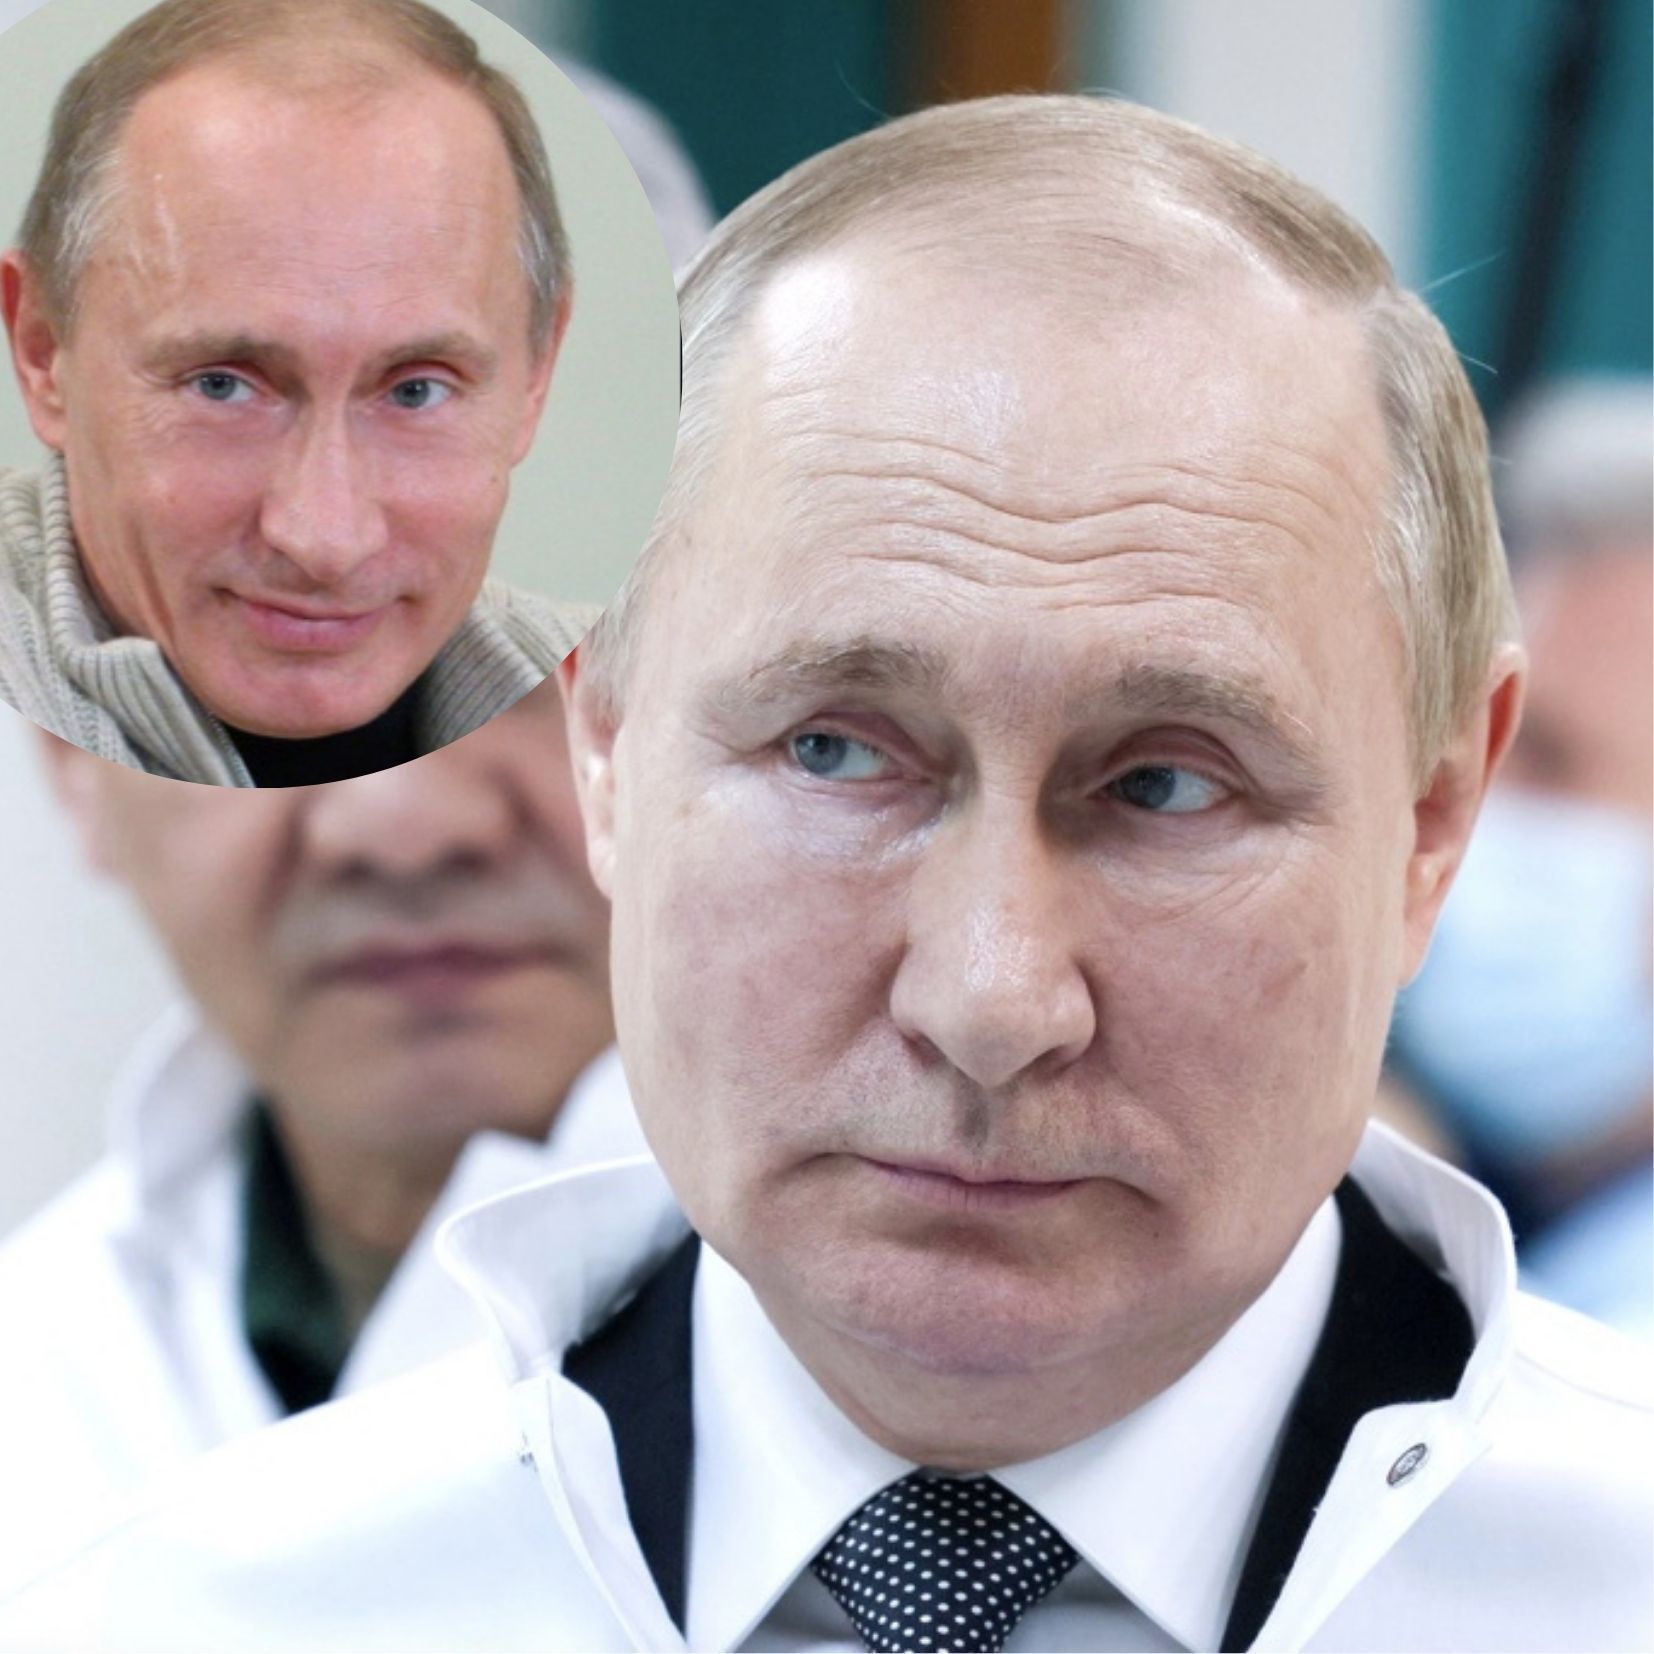 Putin korzysta ze sterydów, czy ostrzykuje się botoksem?